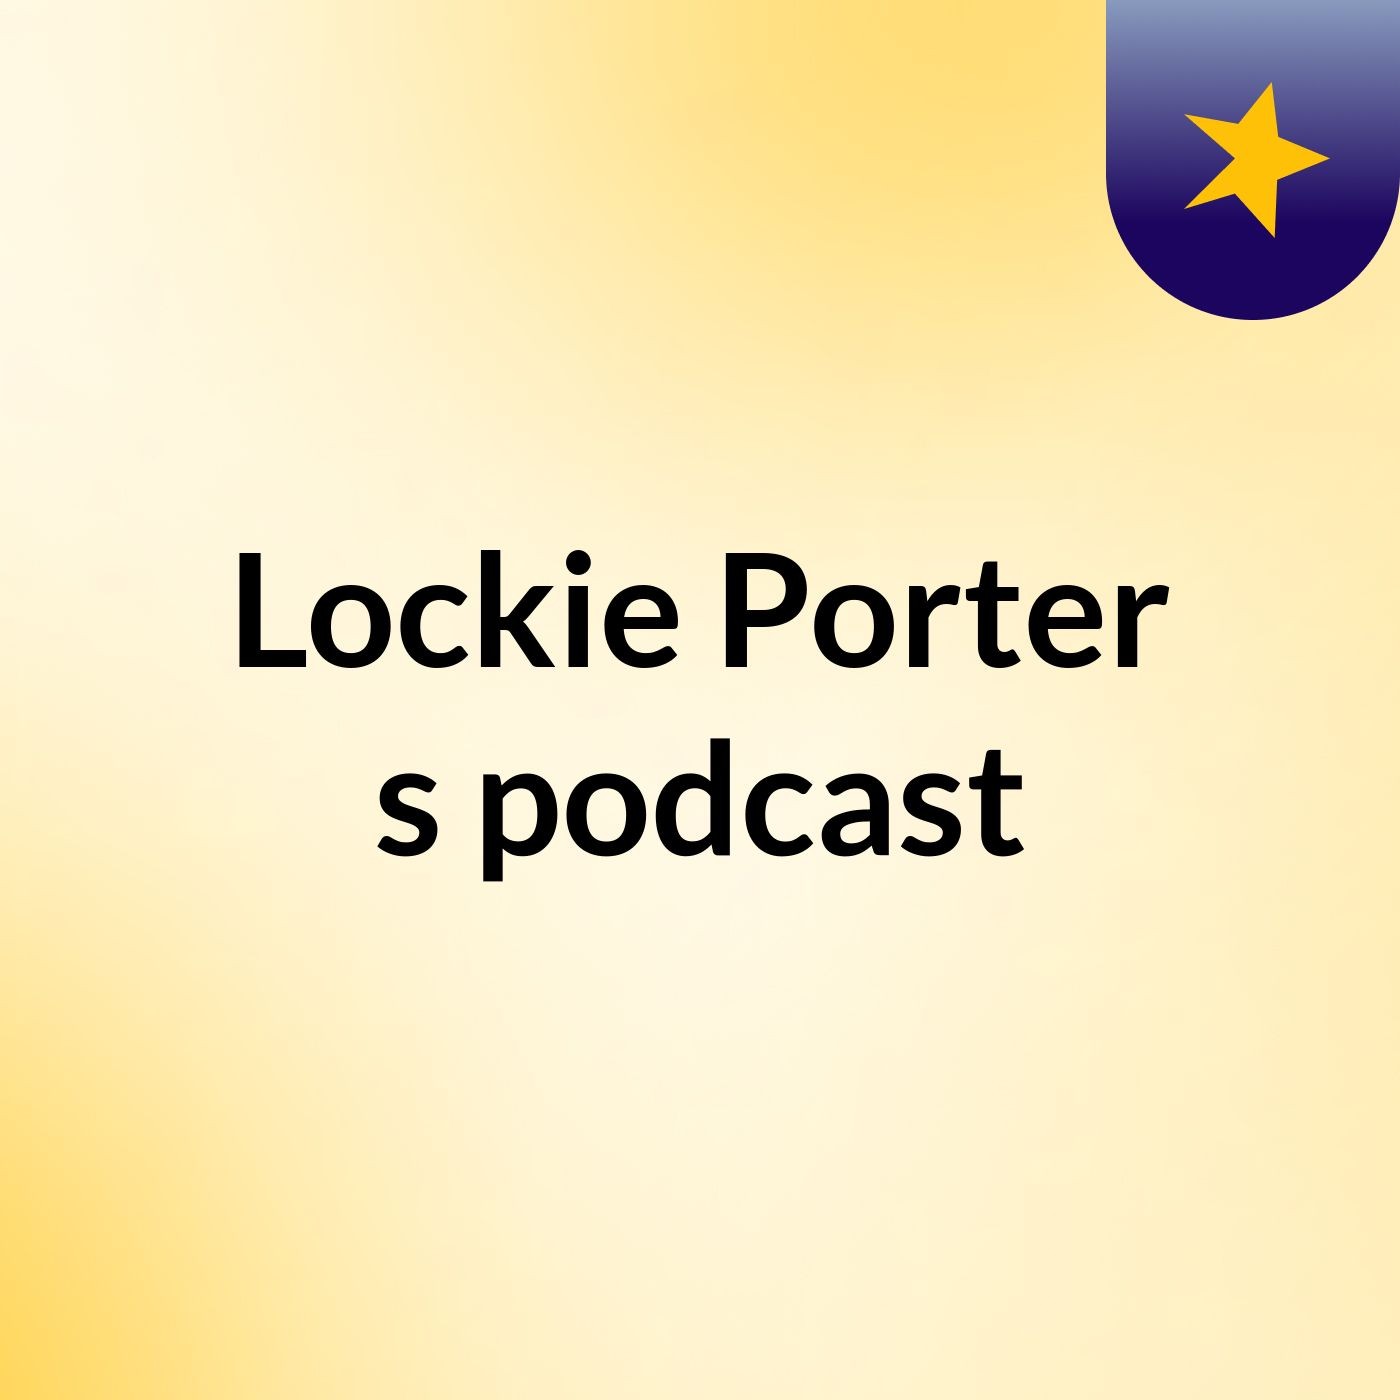 Lockie Porter's podcast